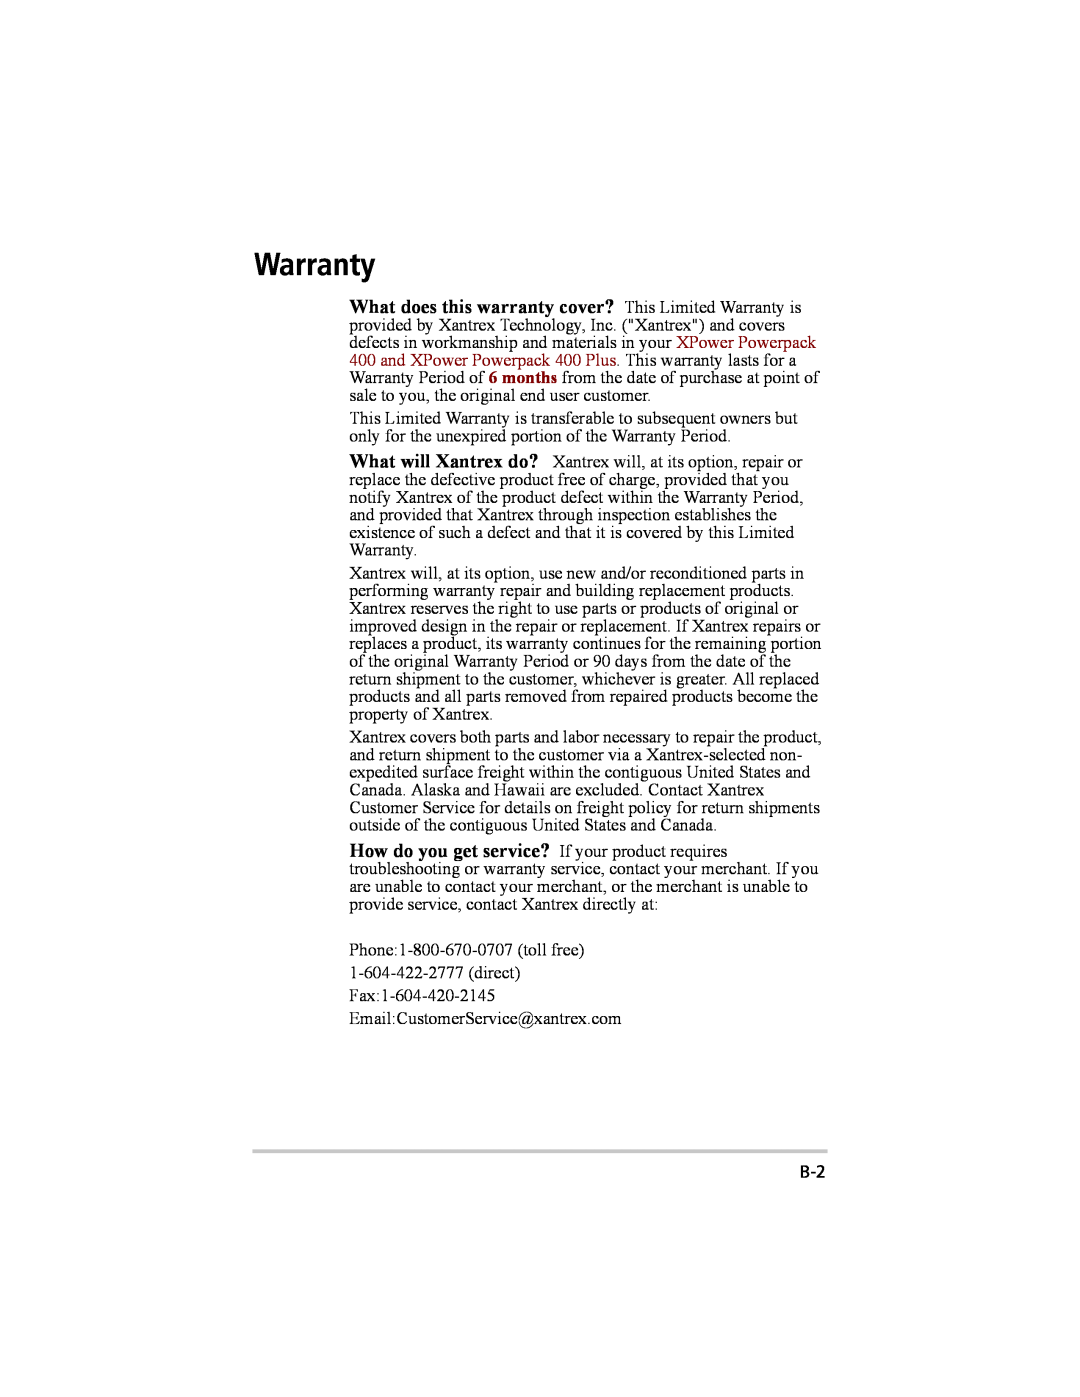 Xantrex Technology 200 manual Warranty 